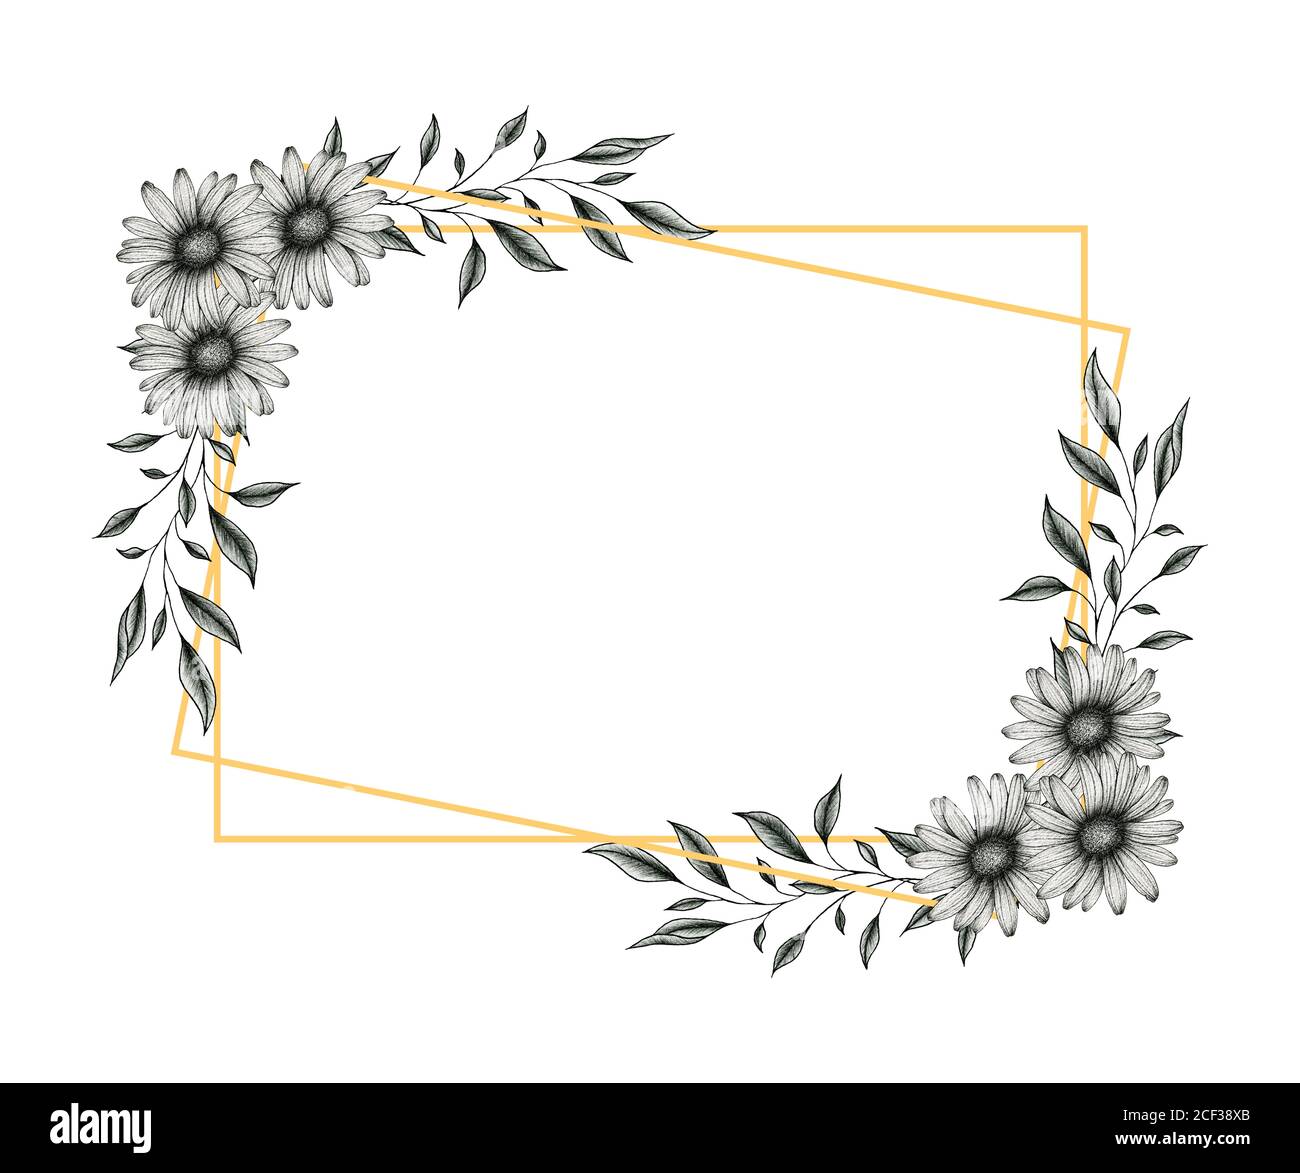 marco de oro con flores y hojas de margarita, ilustración floral gráfica  con margaritas en blanco y negro y ramas de hojas para bodas o saludos  Fotografía de stock - Alamy